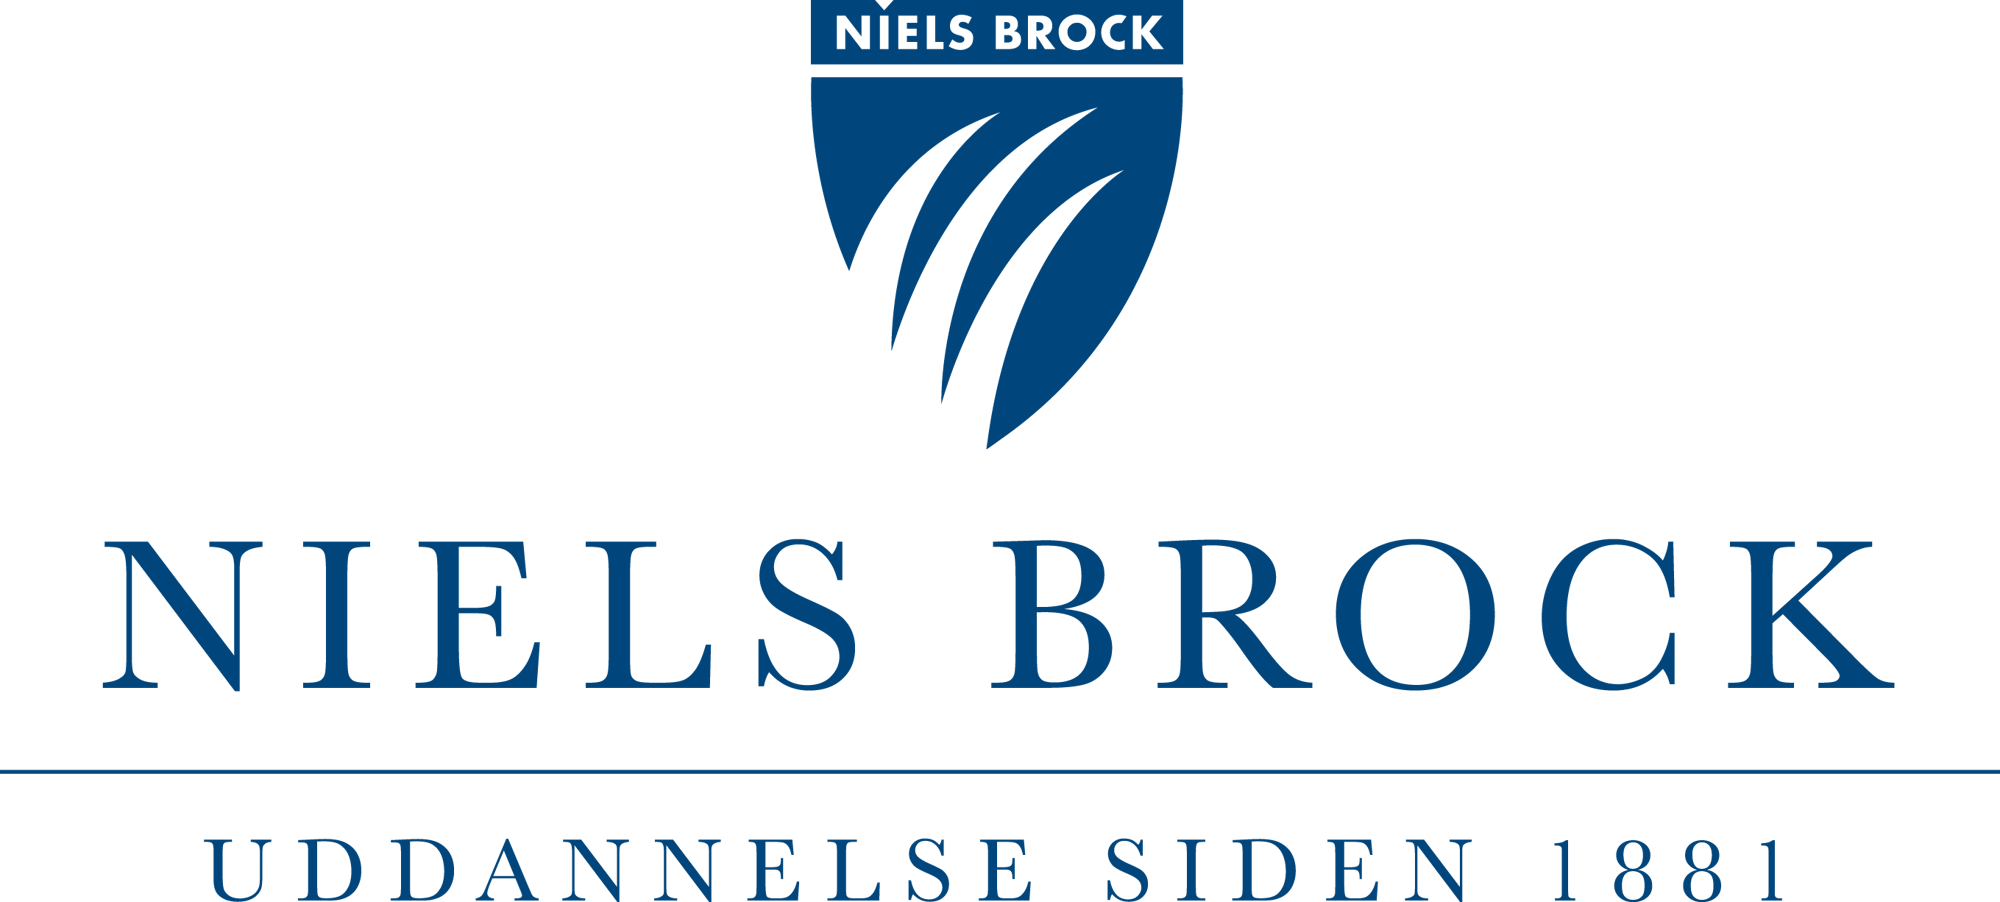 niels brock logo